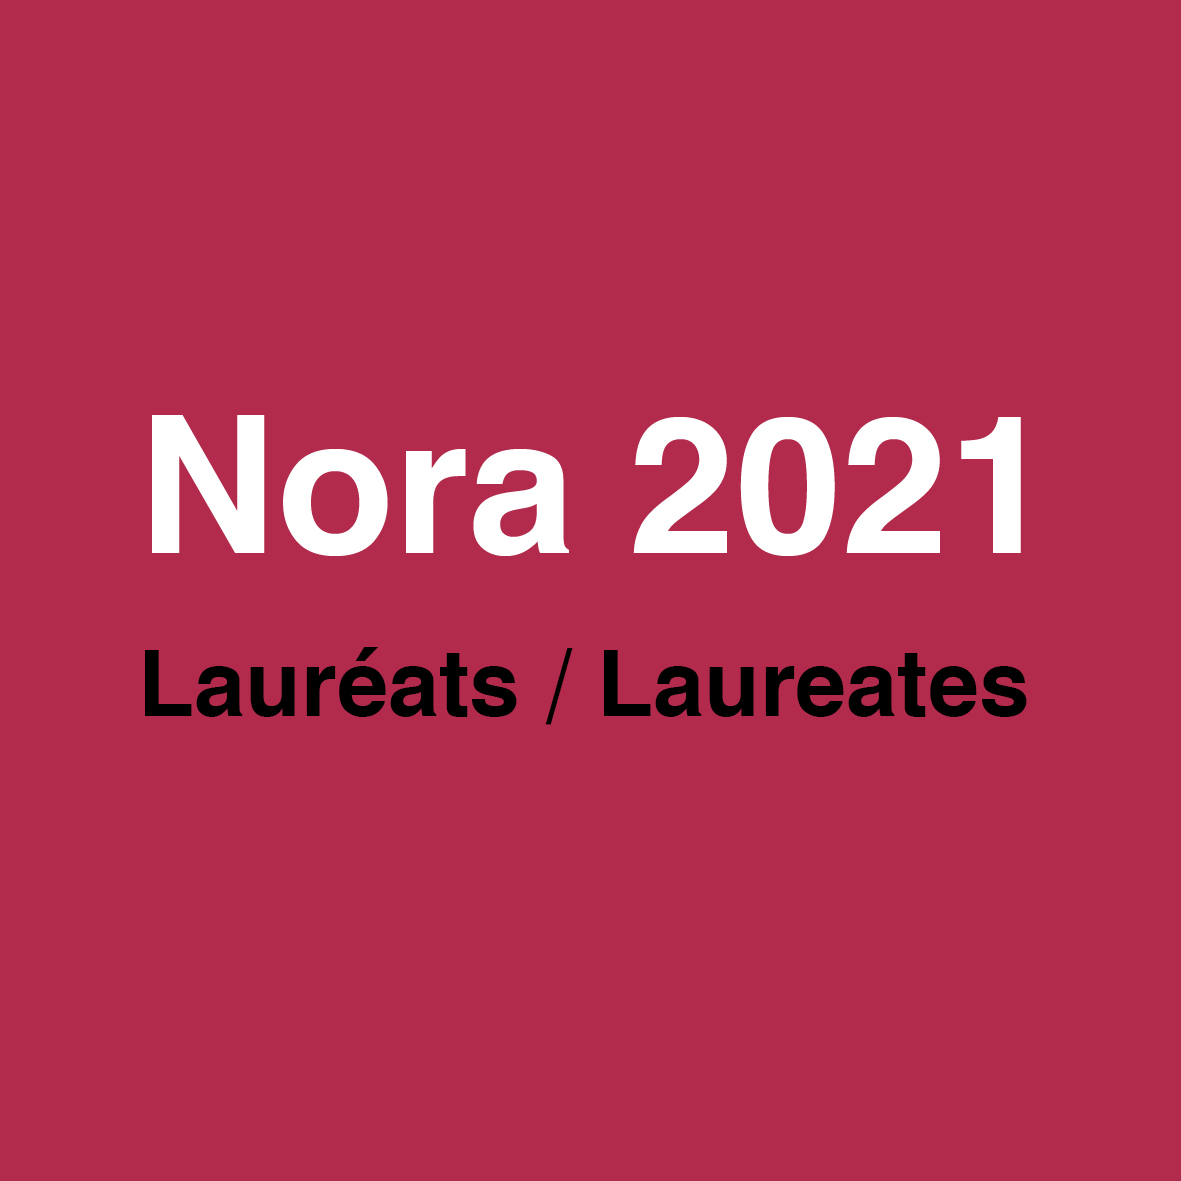 Les lauréats Nora 2021